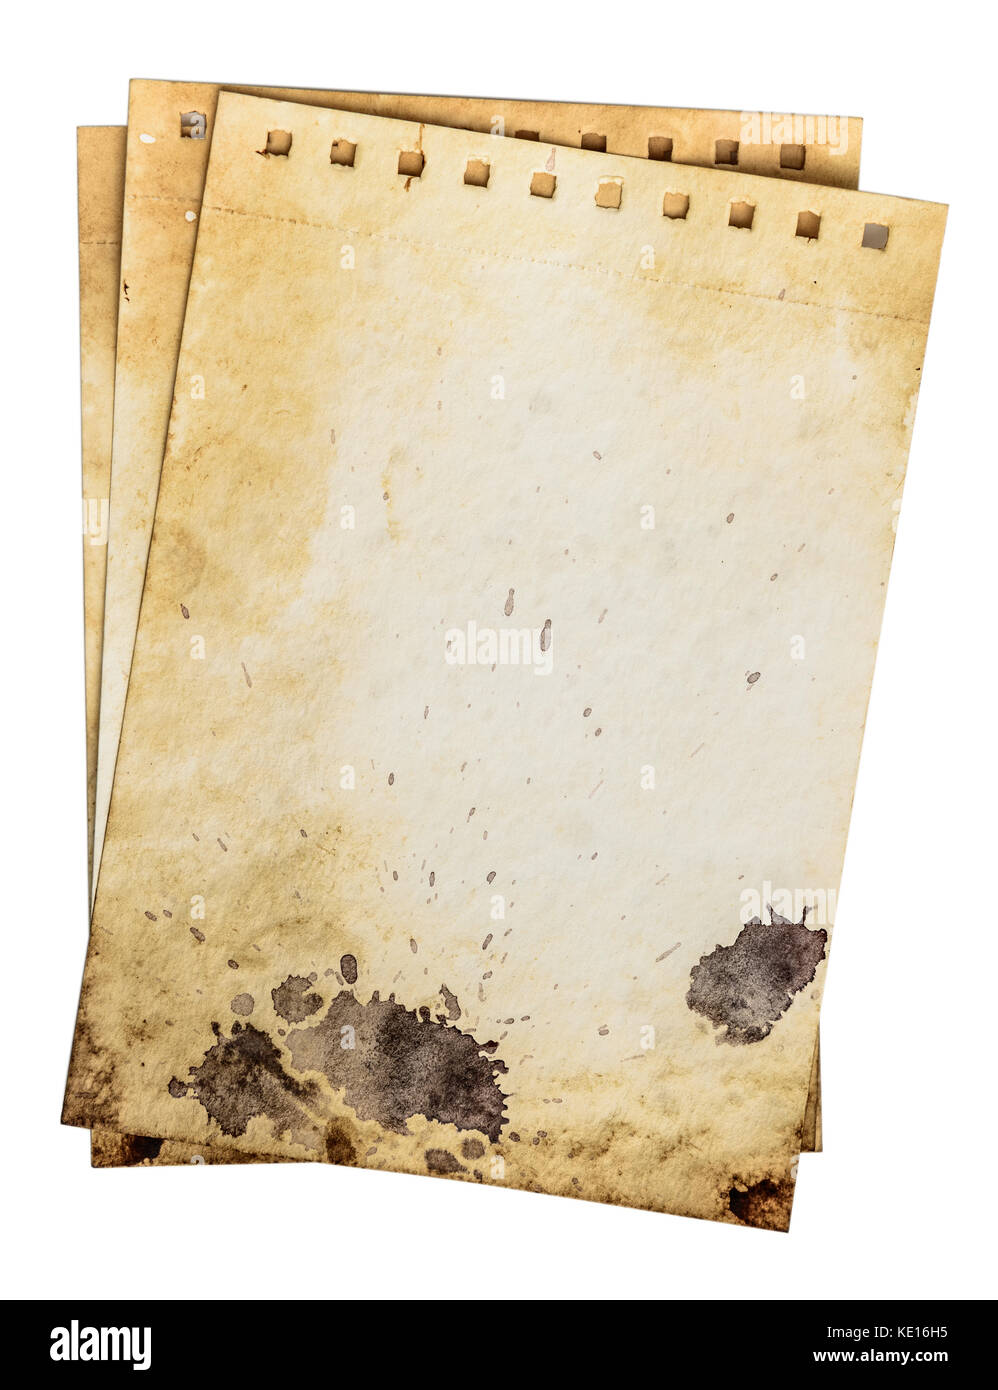 Sporchi le pagine del notebook. vecchio ruvido grunge modello di carta con gocce e sporco e forma della spaccatura. percorso di lavoro Foto Stock